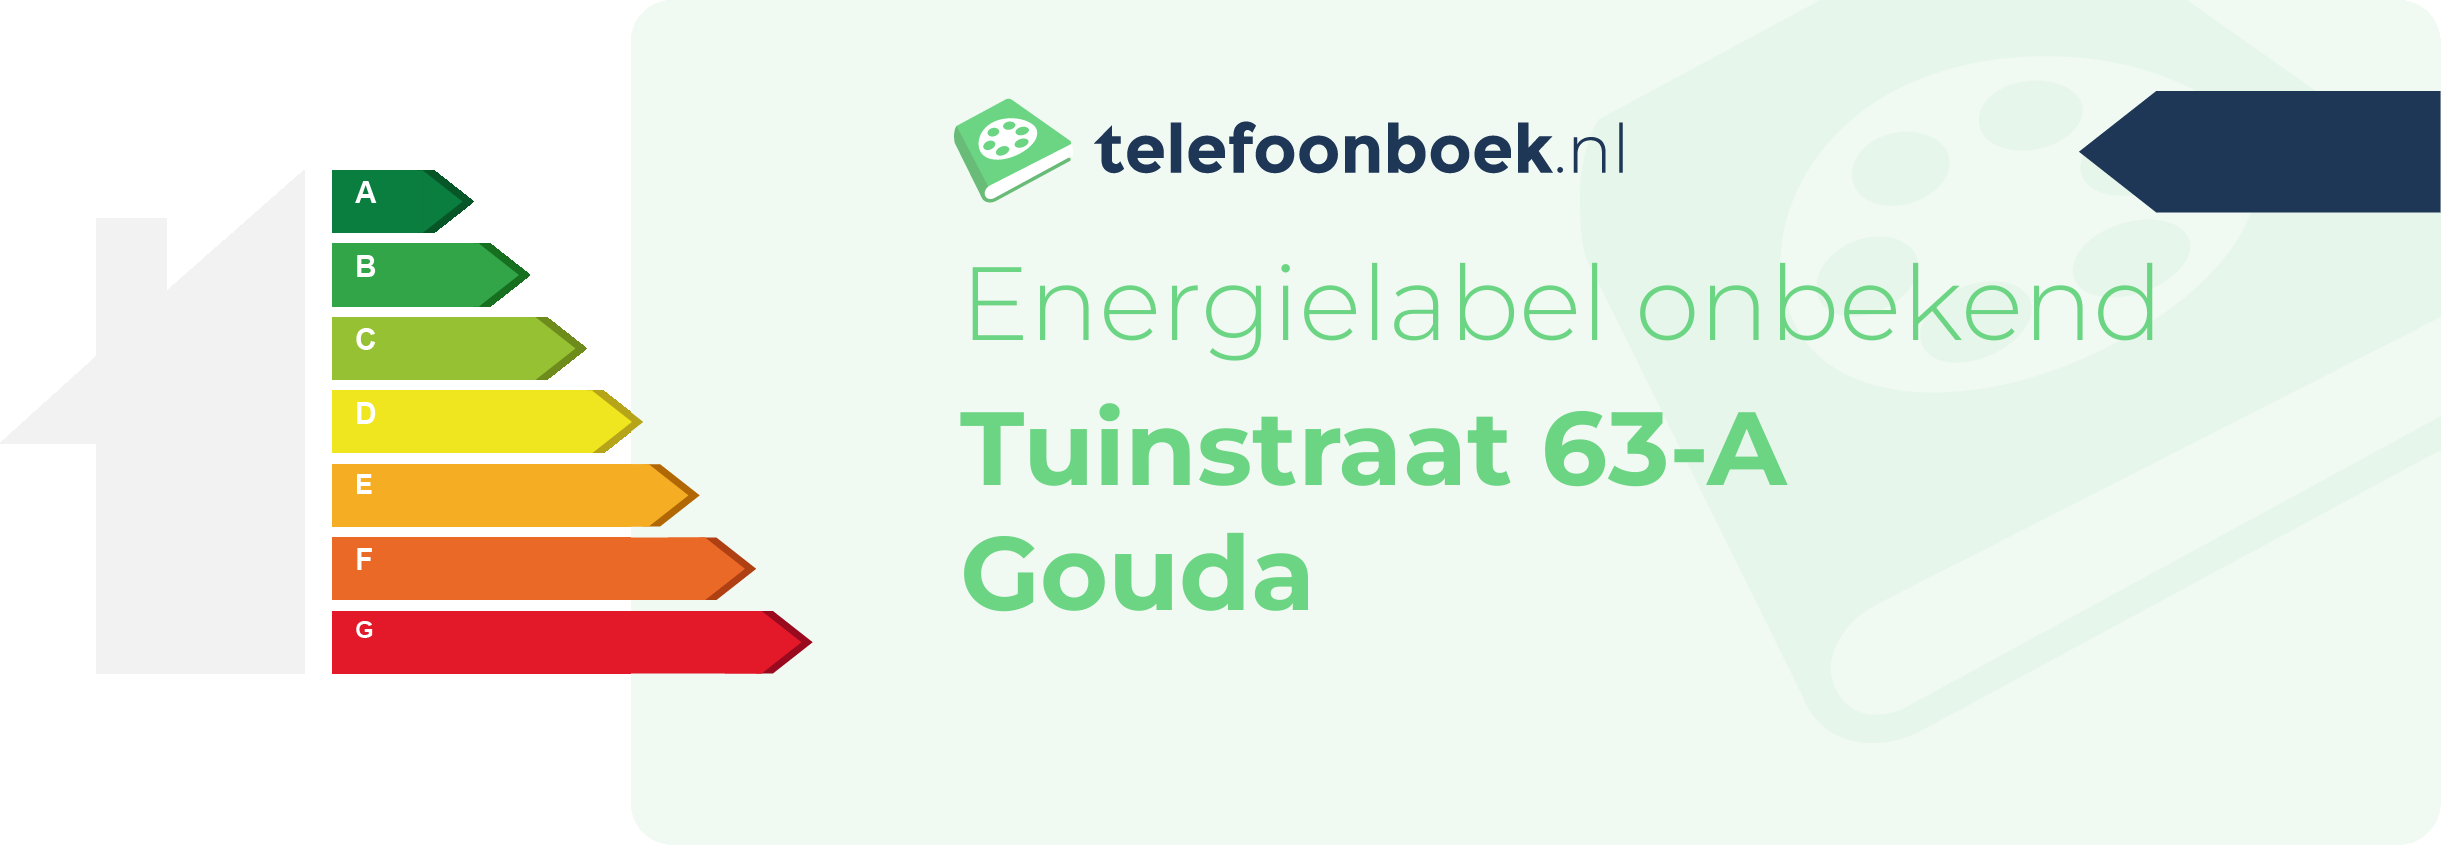 Energielabel Tuinstraat 63-A Gouda